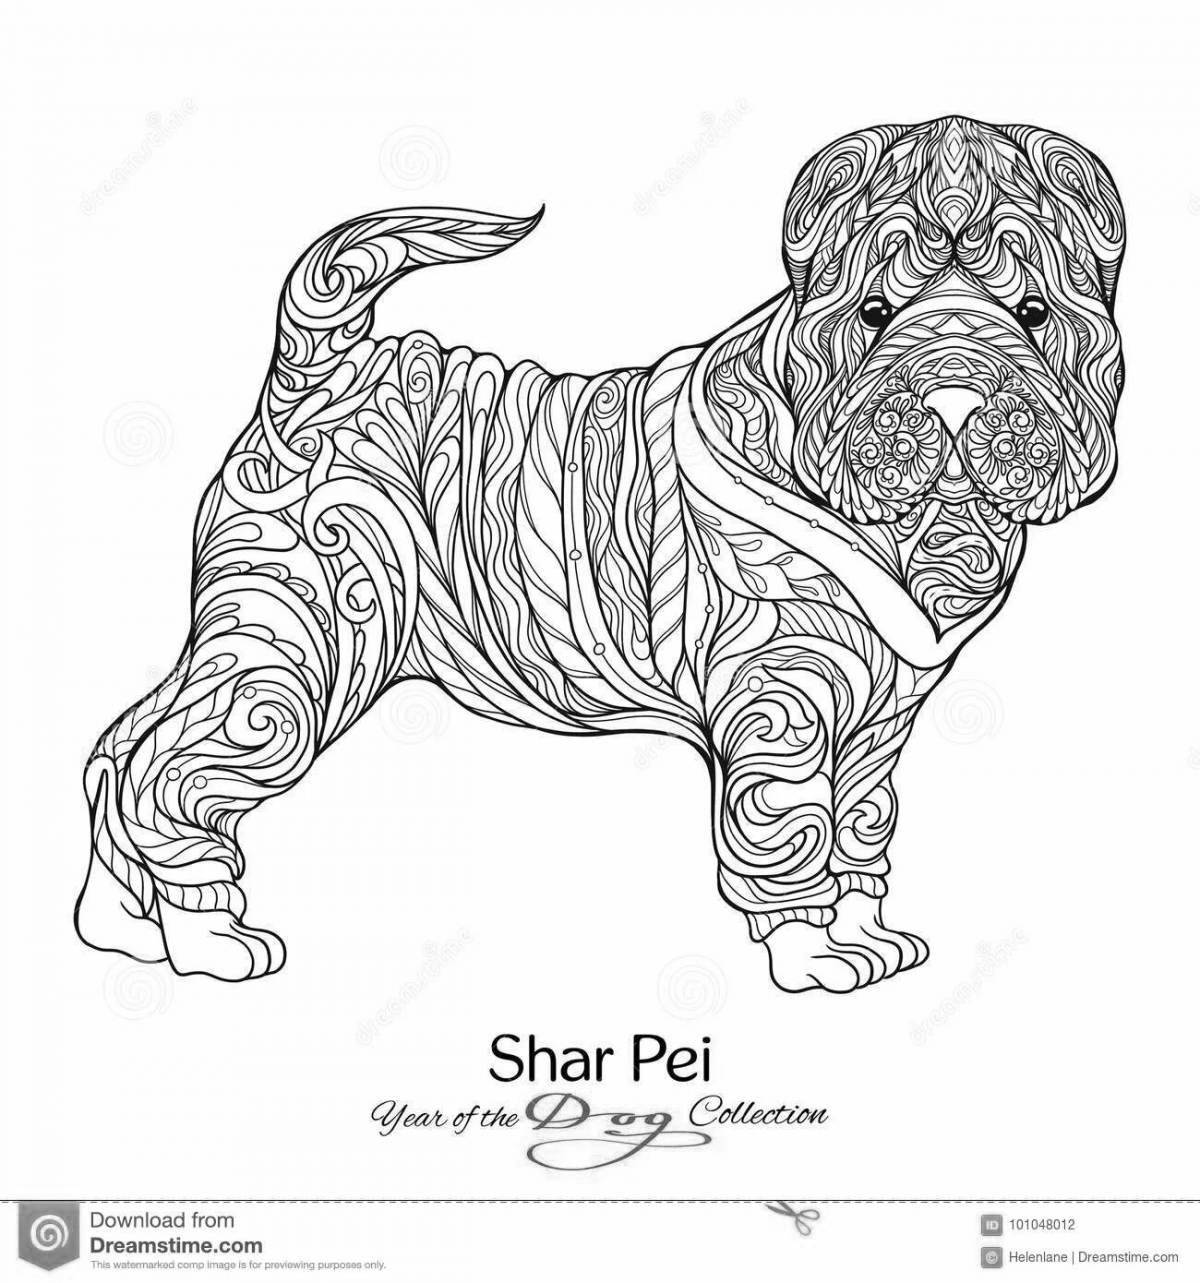 Adorable Shar Pei coloring book